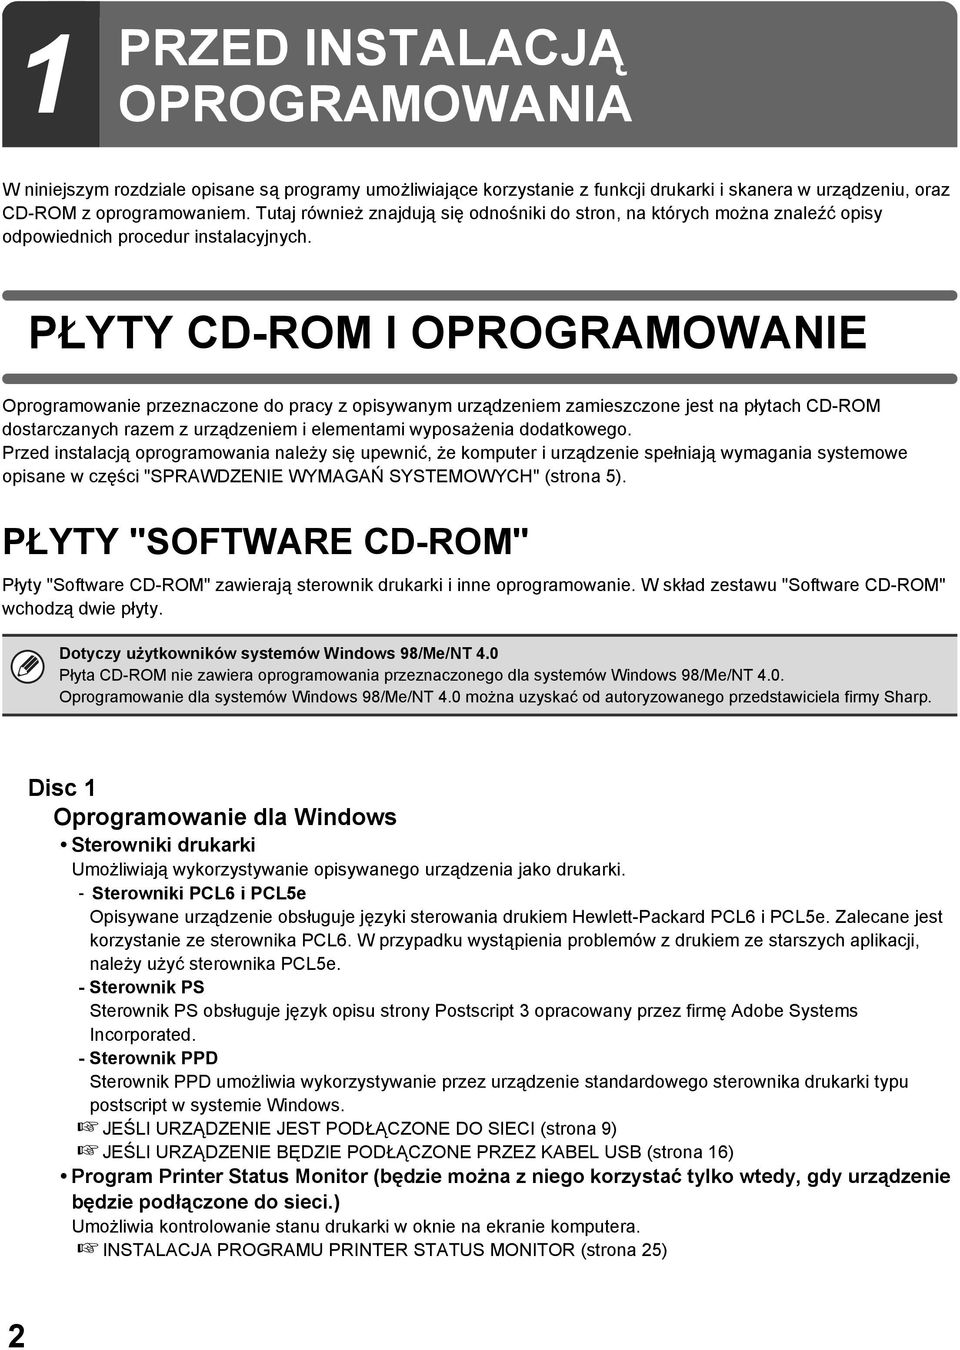 PŁYTY CD-ROM I OPROGRAMOWANIE Oprogramowanie przeznaczone do pracy z opisywanym urządzeniem zamieszczone jest na płytach CD-ROM dostarczanych razem z urządzeniem i elementami wyposażenia dodatkowego.